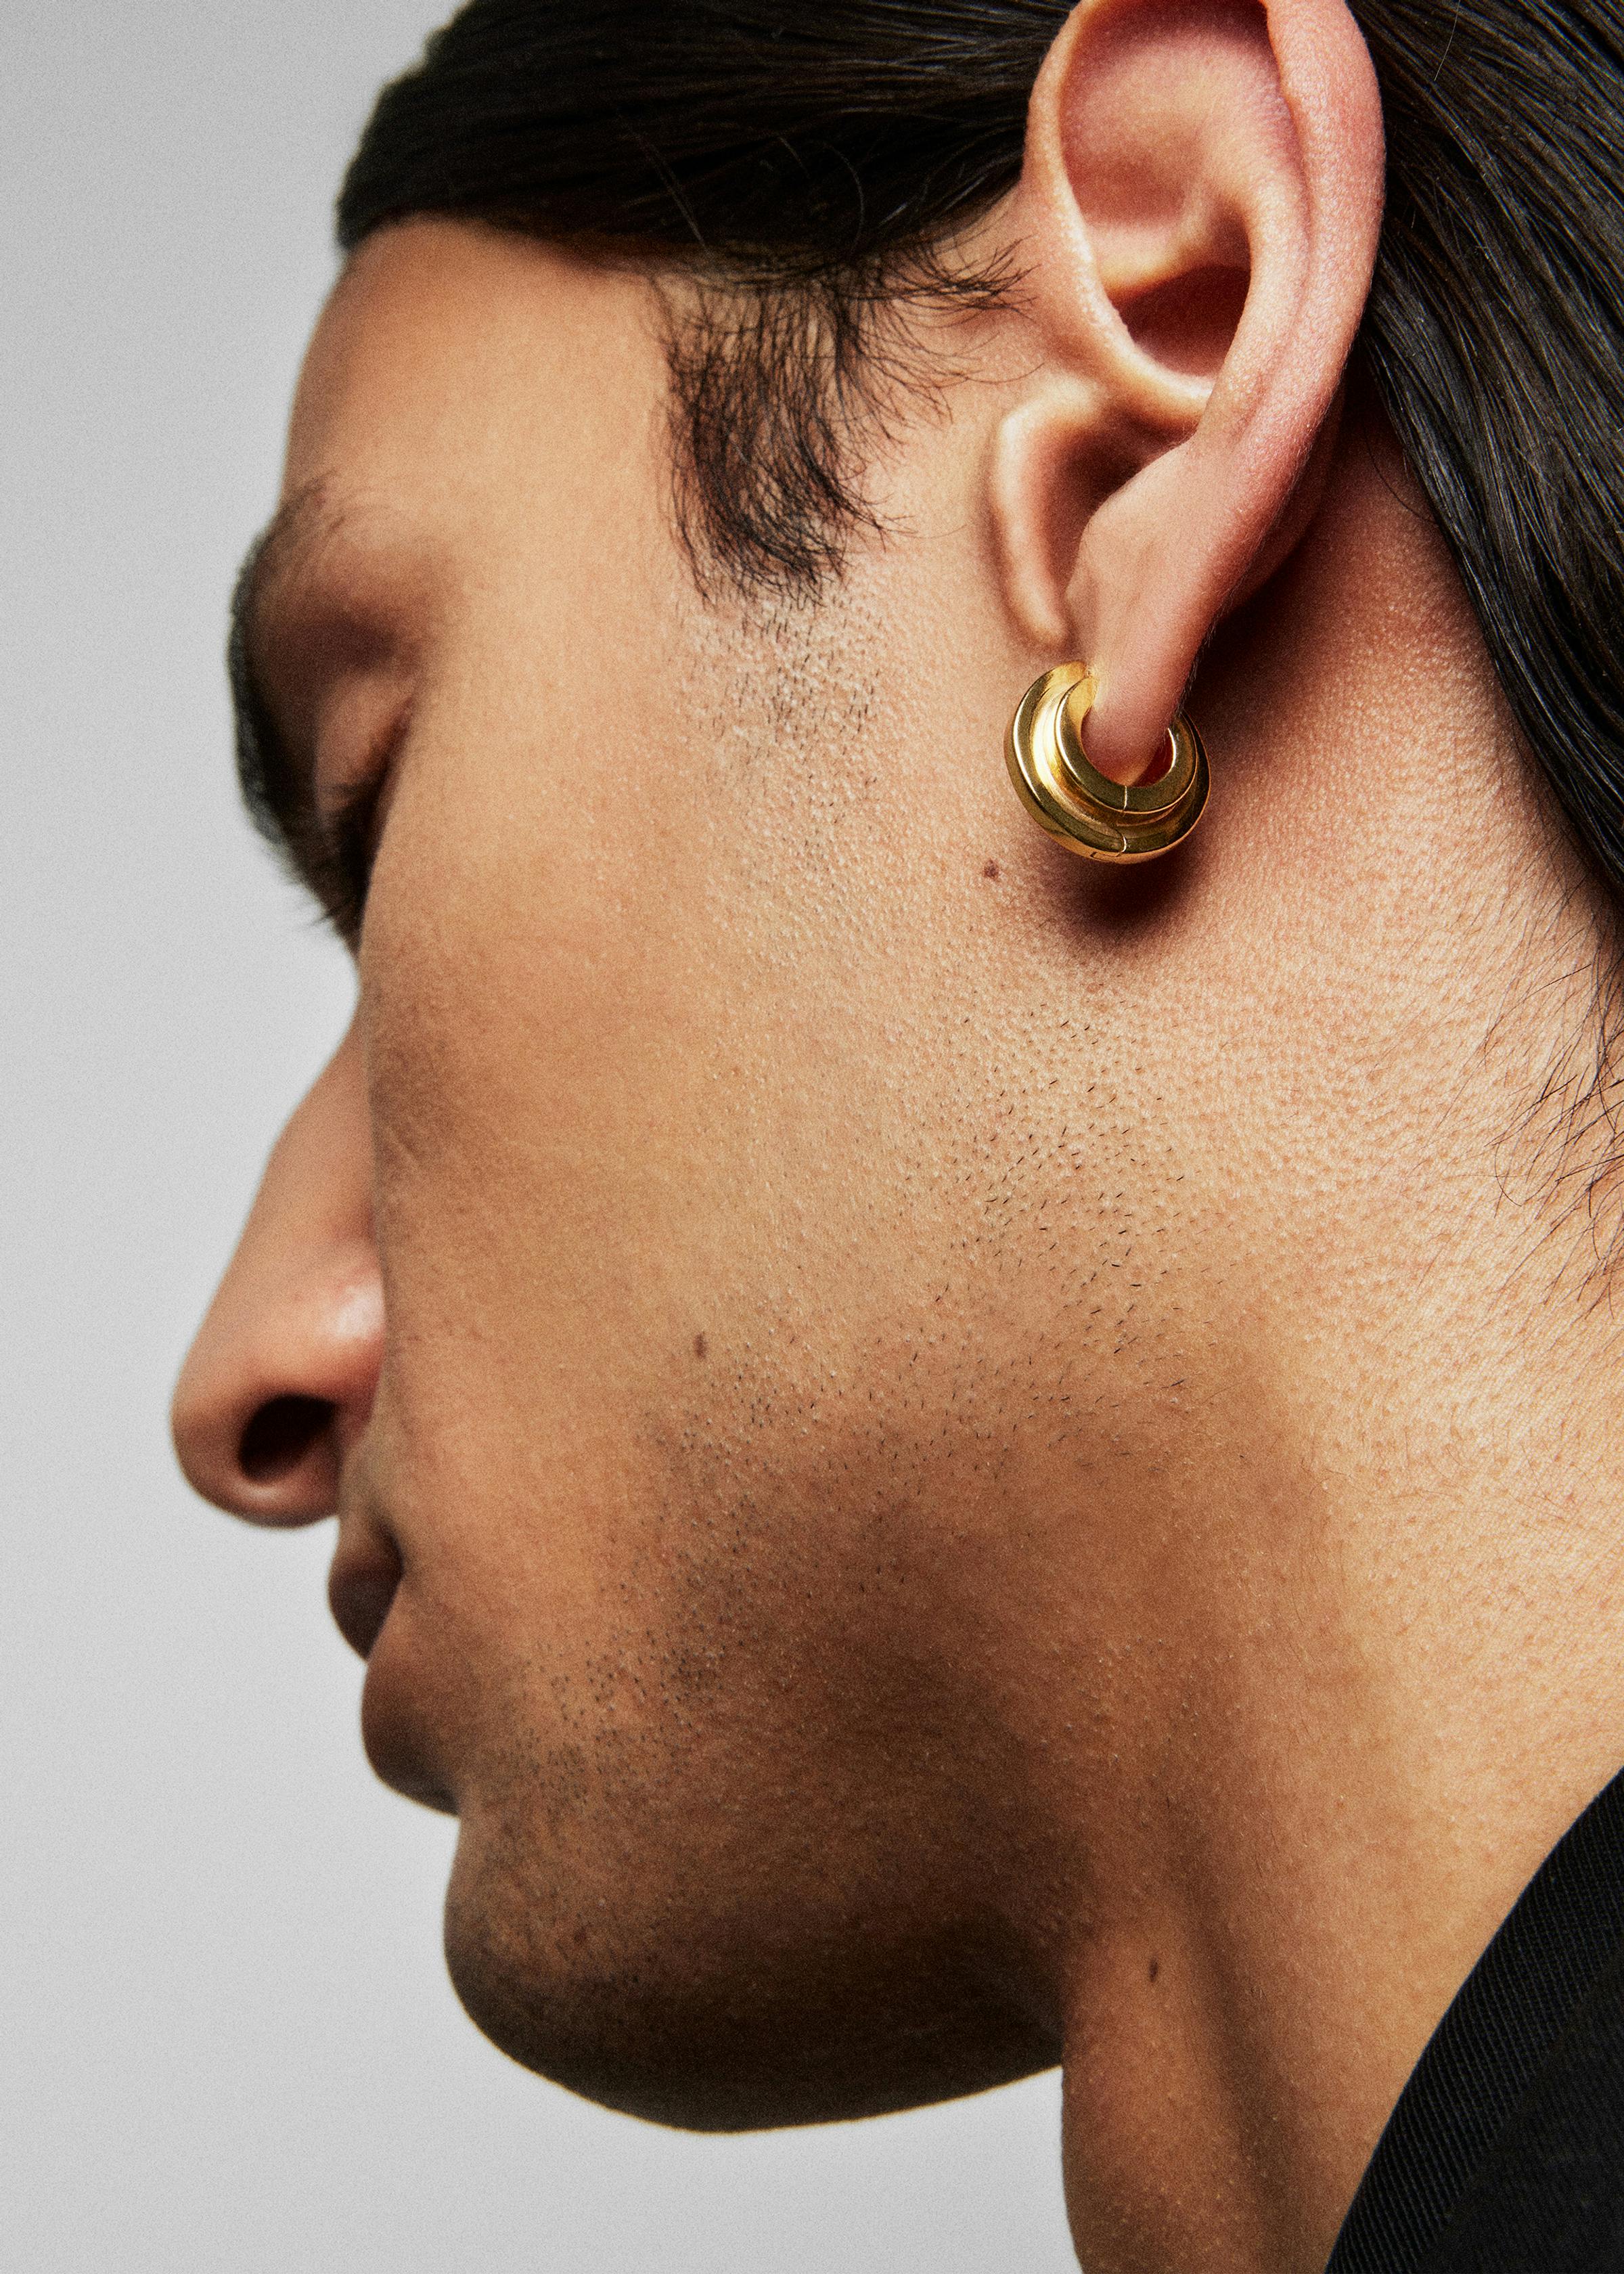 Level earrings